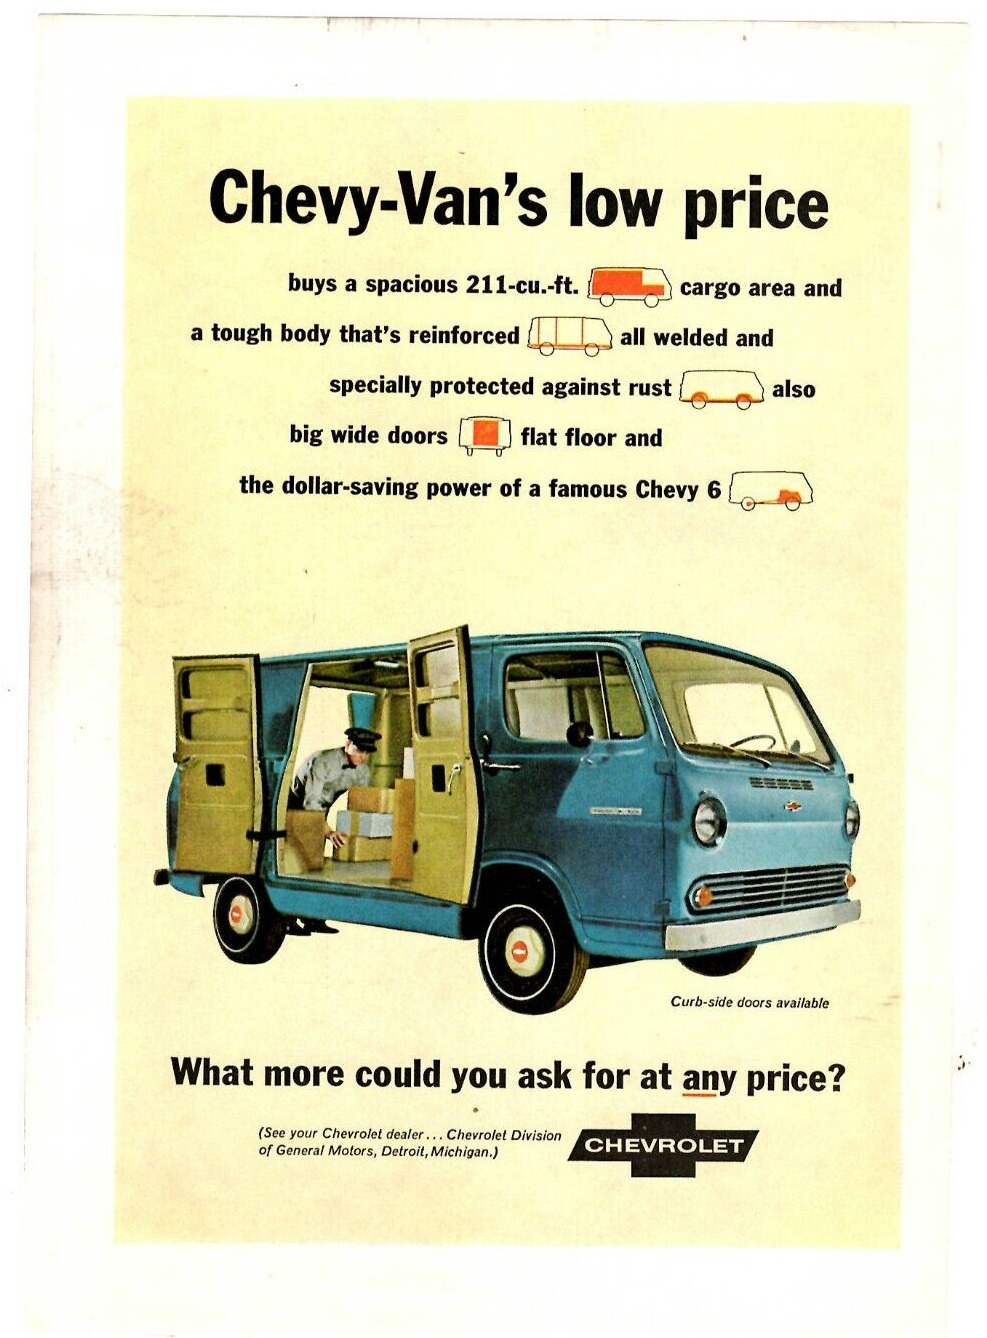 1966 Print Ad Chevrolet Chevy-Van\'s low price 211-cu ft cargo area tough body